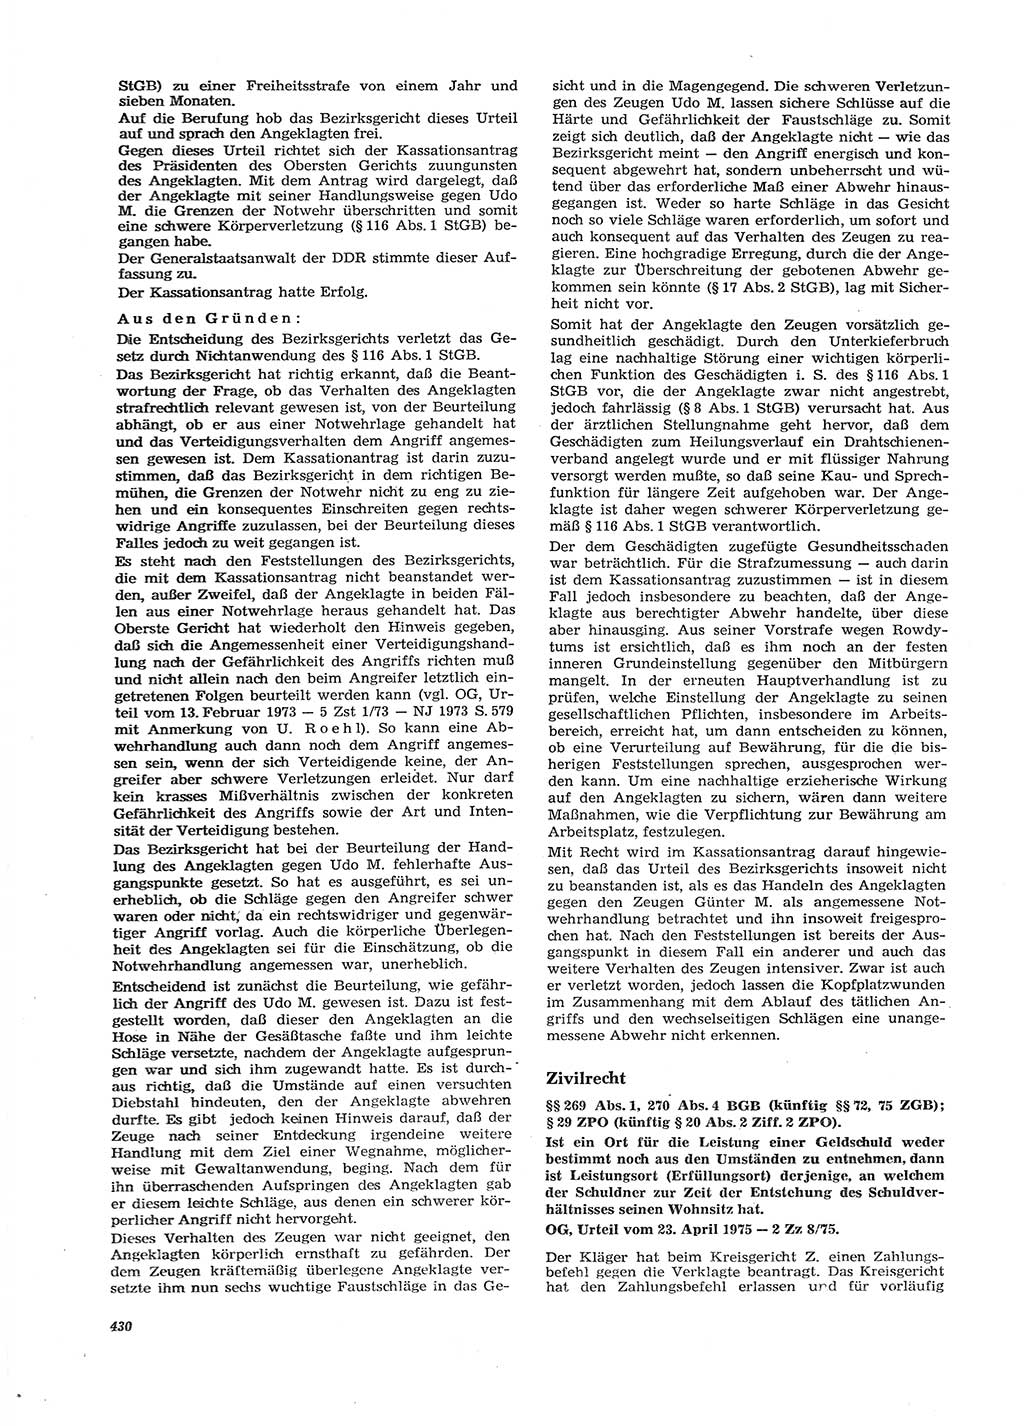 Neue Justiz (NJ), Zeitschrift für Recht und Rechtswissenschaft [Deutsche Demokratische Republik (DDR)], 29. Jahrgang 1975, Seite 430 (NJ DDR 1975, S. 430)